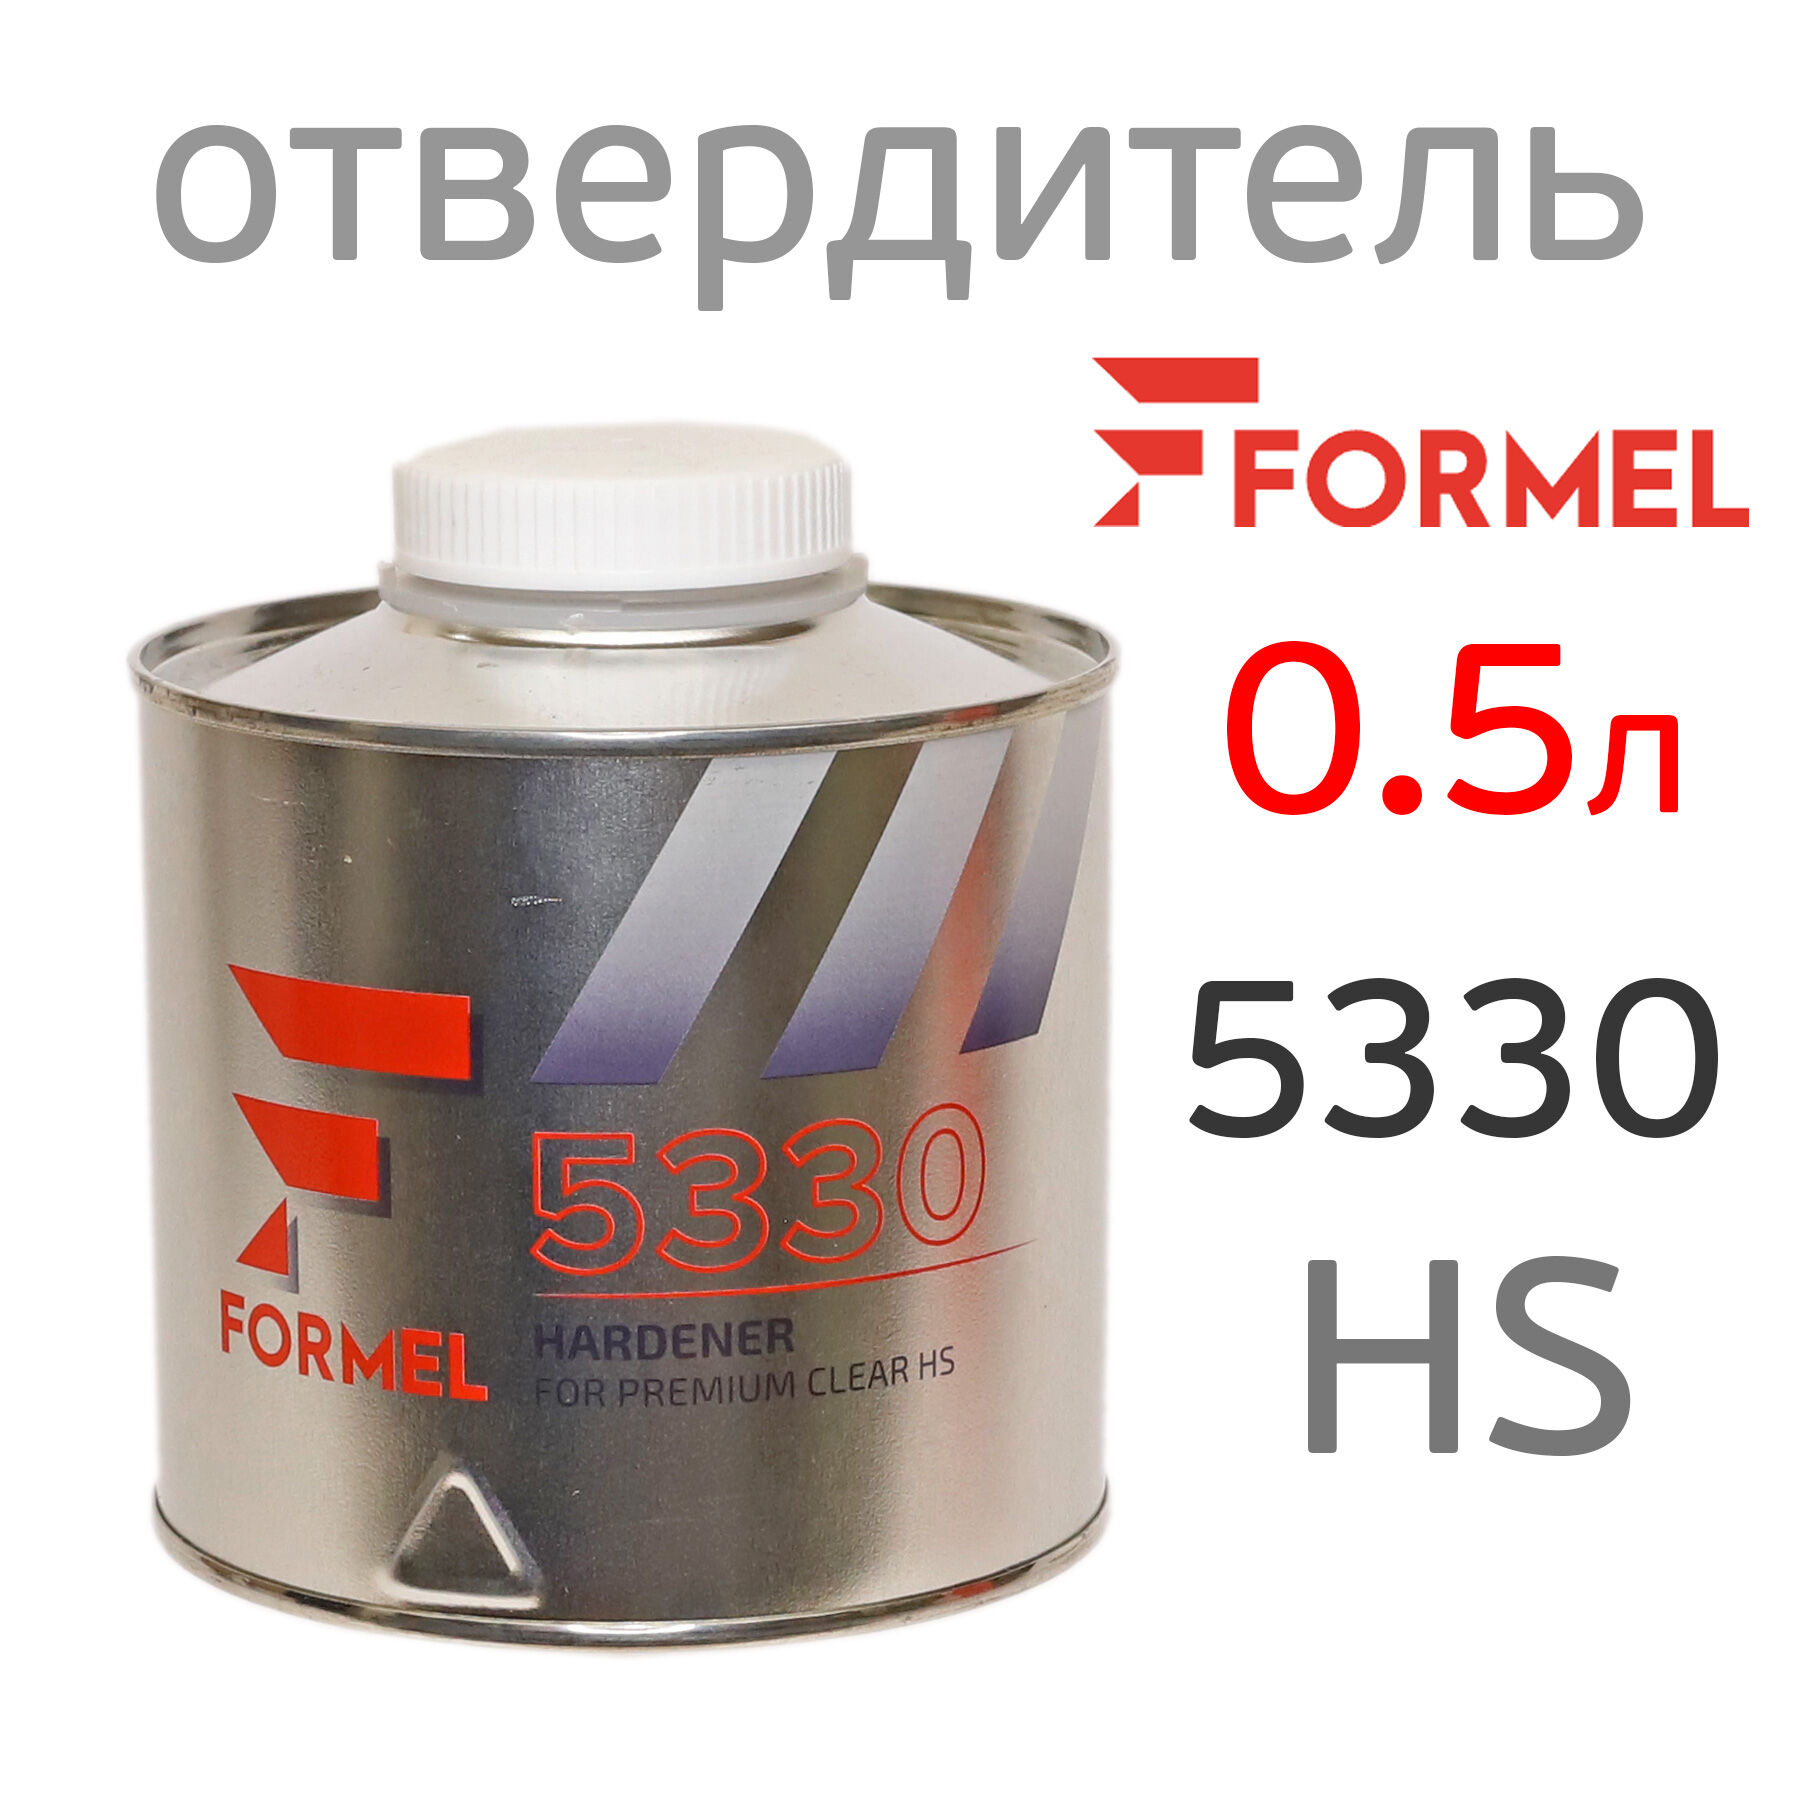 Отвердитель Formel 5330 (0,5л) для 2К лака HS 1330